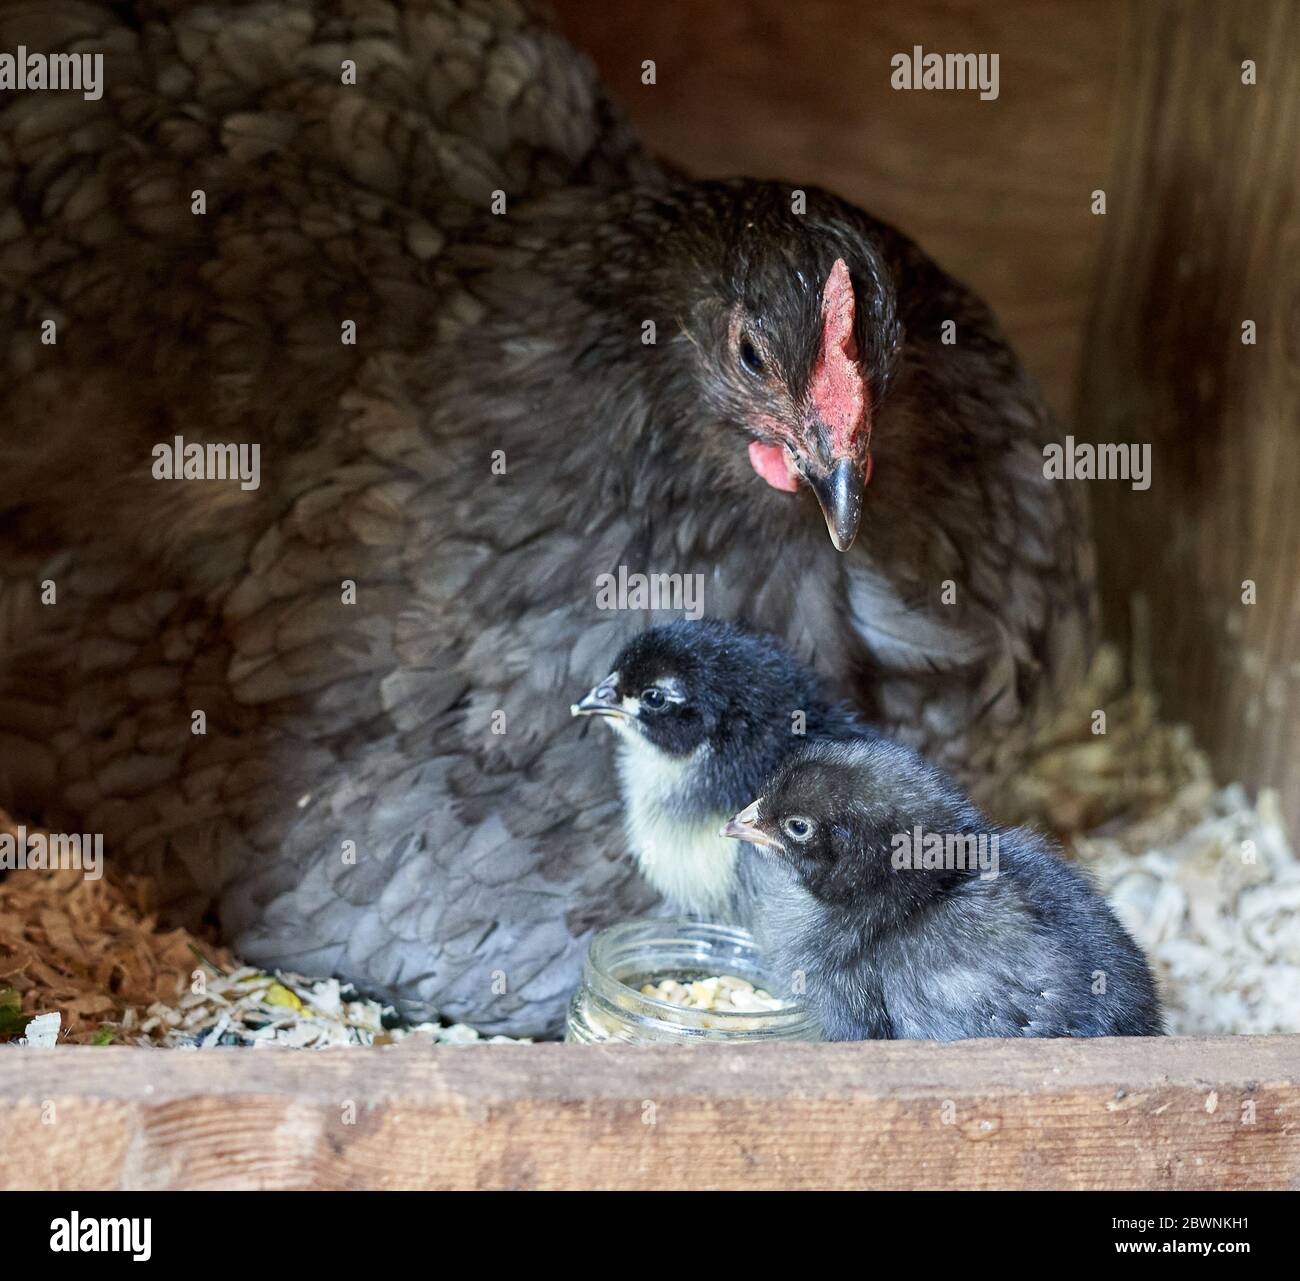 Eine Mutter Henne wacht über ihre kleinen Küken in ihrem Nistkasten. Stockfoto